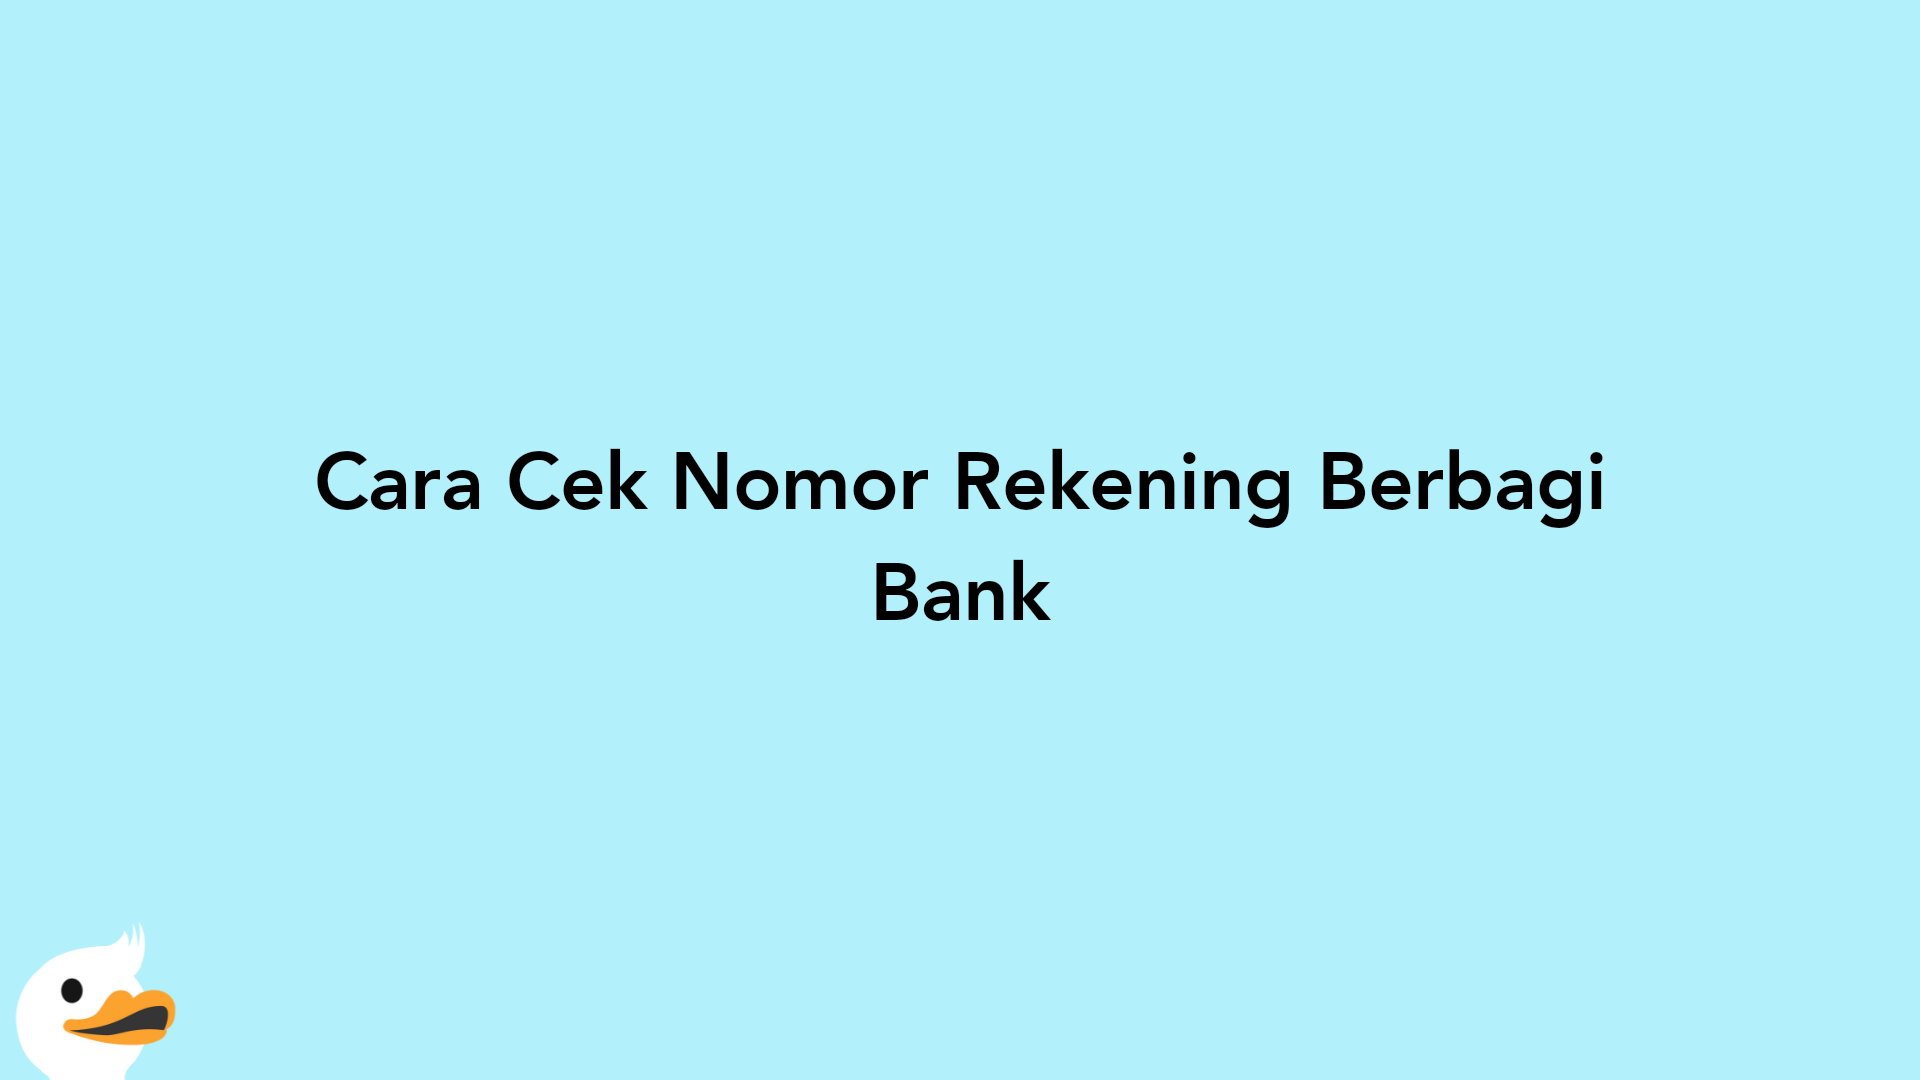 Cara Cek Nomor Rekening Berbagi Bank